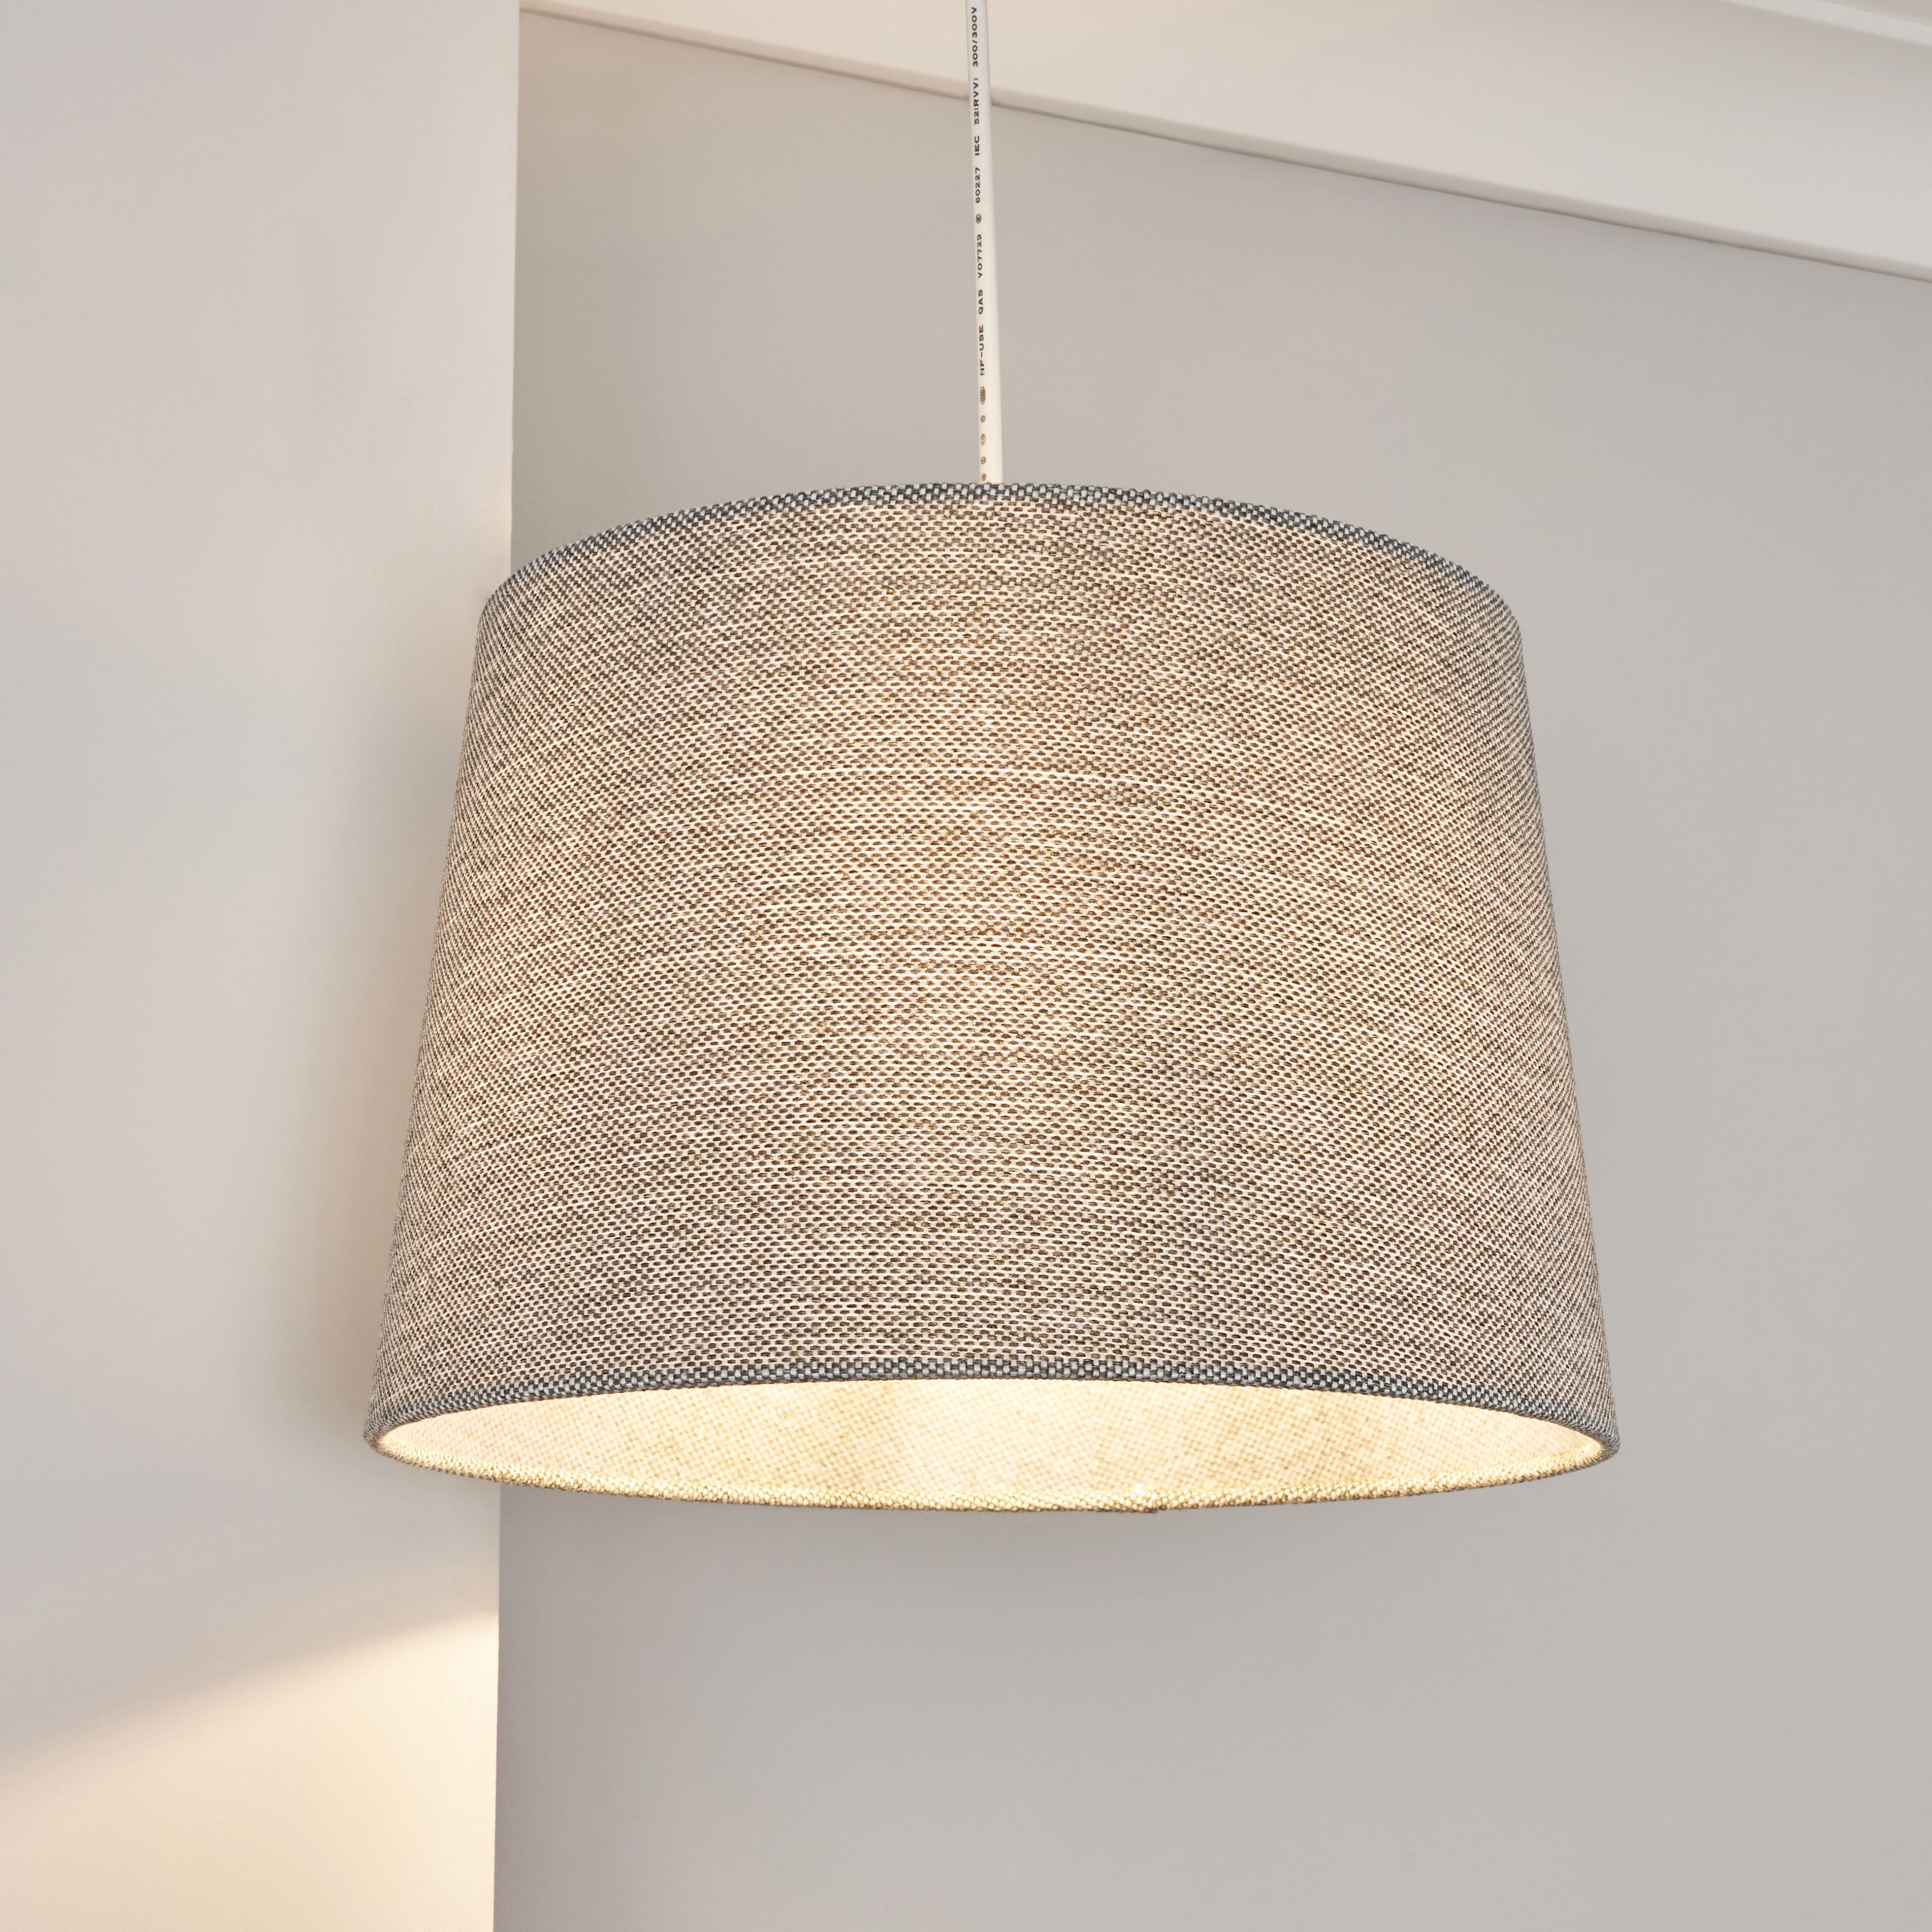 Inlight Yurt Grey Woven effect Contemporary Light shade (D)30cm